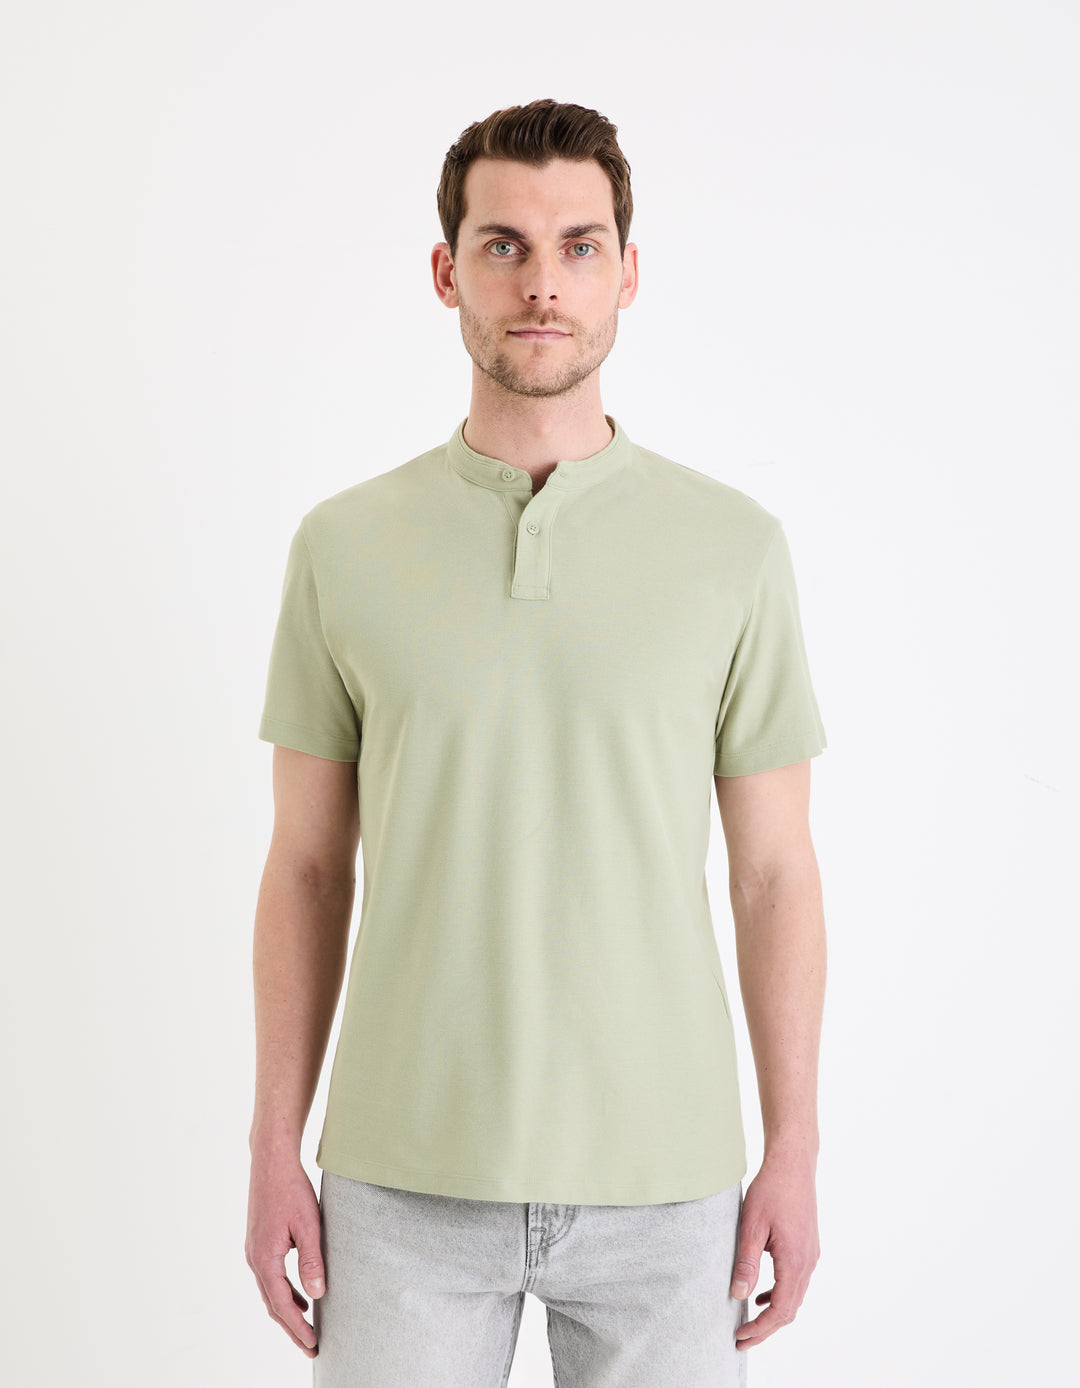 100% cotton mandarin collar polo shirt